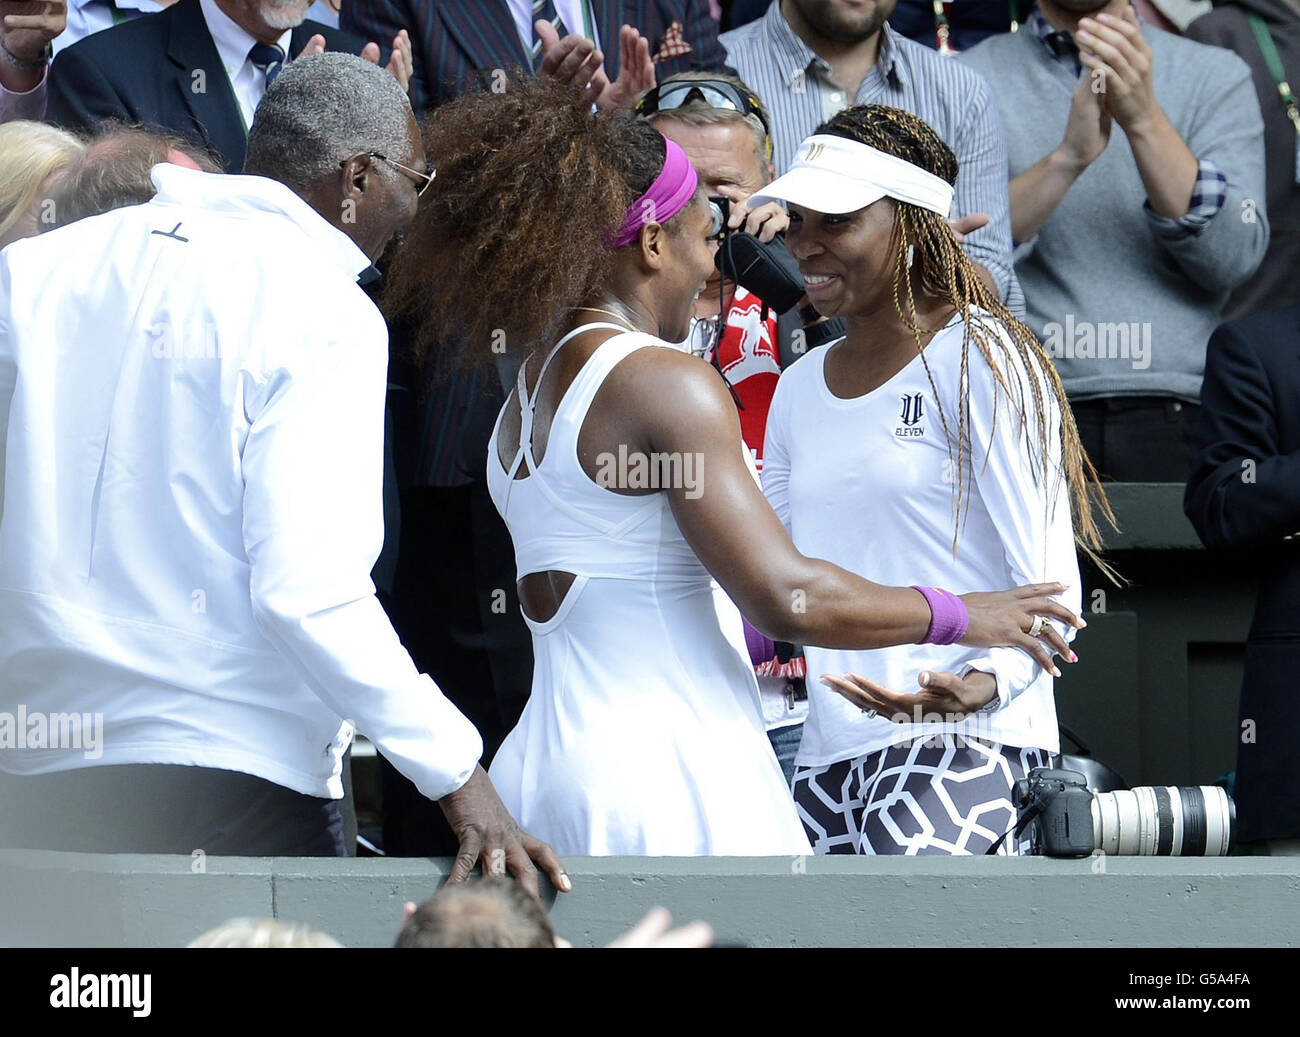 La Serena Williams degli Stati Uniti celebra la sconfitta dell'Agnieszka Radwanska polacca con la sorella Venus Williams (a destra) durante il dodici° giorno dei Campionati Wimbledon del 2012 presso l'All England Lawn Tennis Club di Wimbledon. Foto Stock